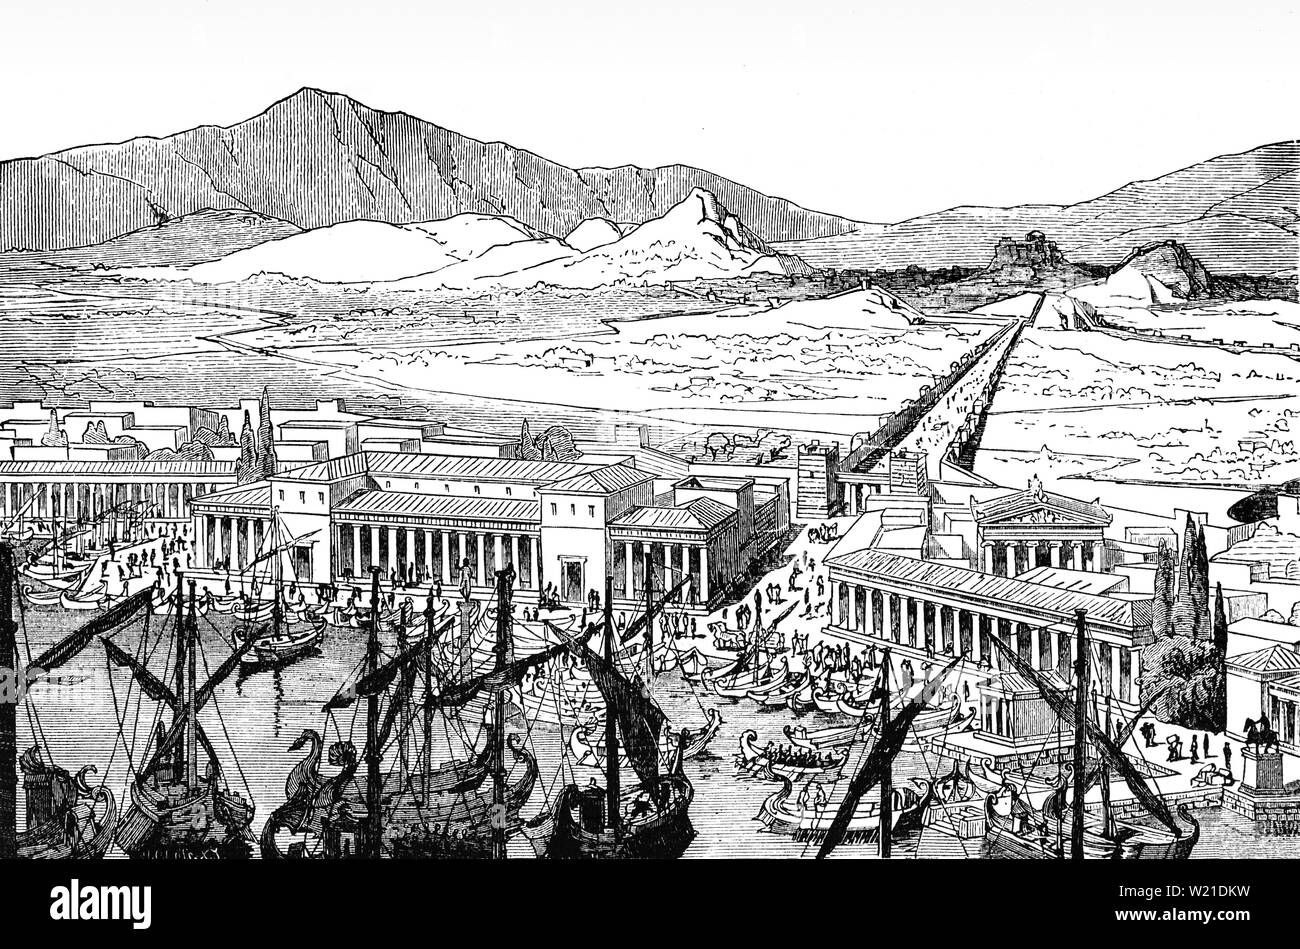 Una veduta aerea del Pireo e le pareti lunghe che collegato ad Atene ai suoi porti al Pireo e Phalerum. Le pareti, a circa 6 km di lunghezza, sono stati inizialmente costruito nella metà del V secolo a.c. e provvisto di una connessione sicura al mare anche durante i periodi di assedio. Essi furono distrutti dagli spartani nel 403 a.c. dopo Atene sconfitta nella guerra del Peloponneso ma ricostruito con supporto per il persiano durante la guerra corinzie nel 395-391 A.C. Lungo le pareti sono state un elemento chiave del Greco ateniese strategia militare, fornendo la città con un collegamento costante al mare e contrastare assedi condotti da terra. Foto Stock